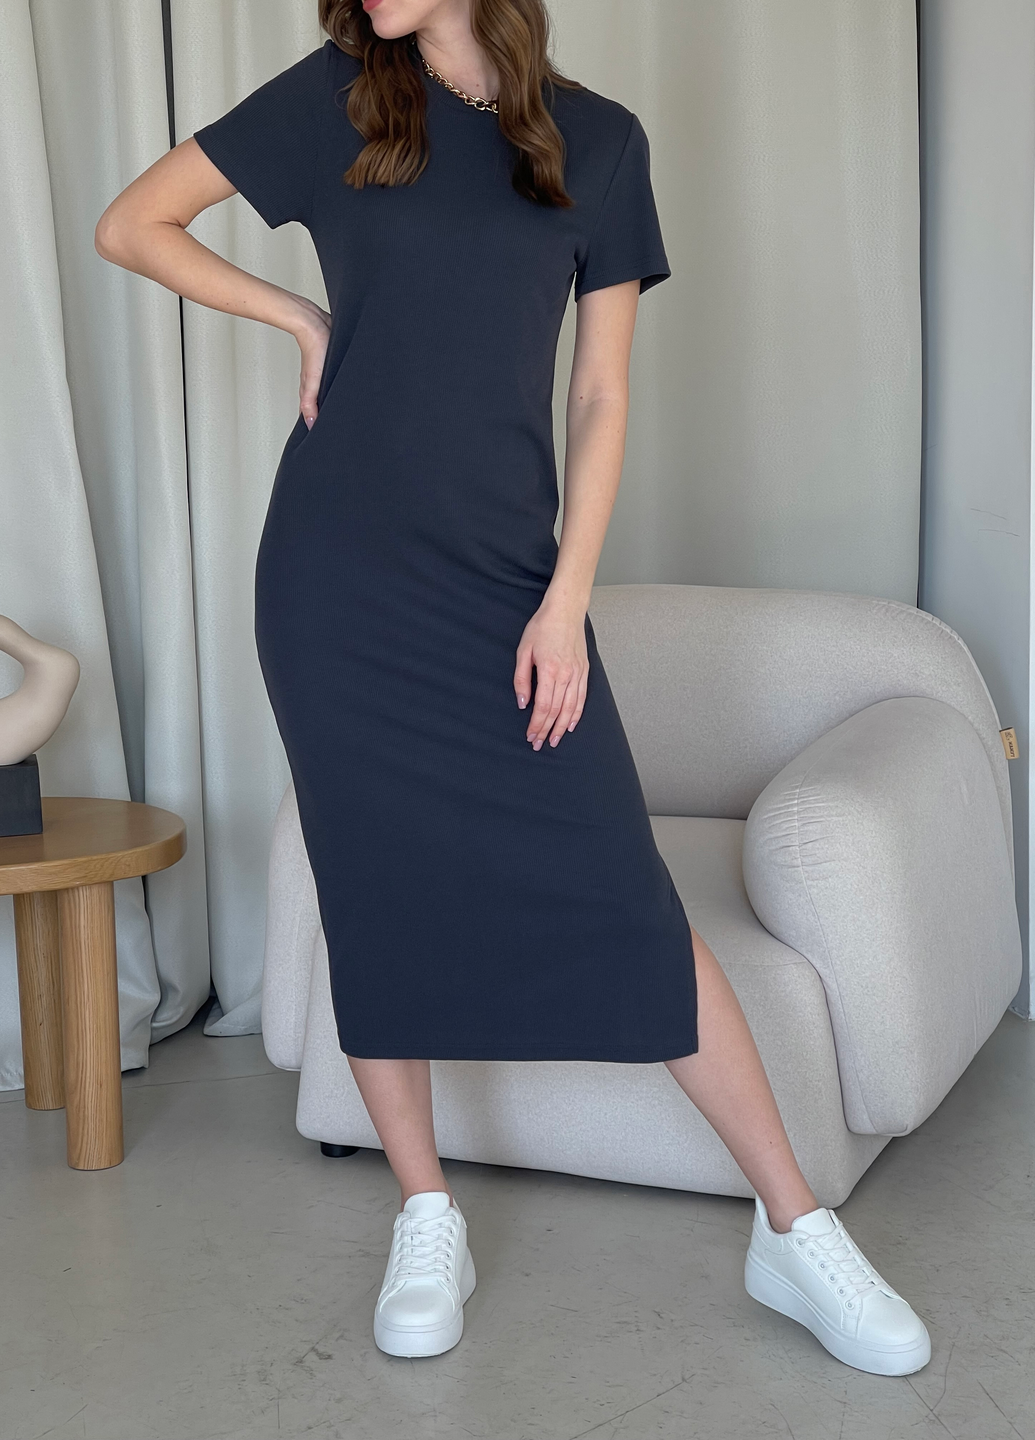 Купить Длинное платье-футболка в рубчик серое Merlini Кассо 700000130 размер 42-44 (S-M) в интернет-магазине